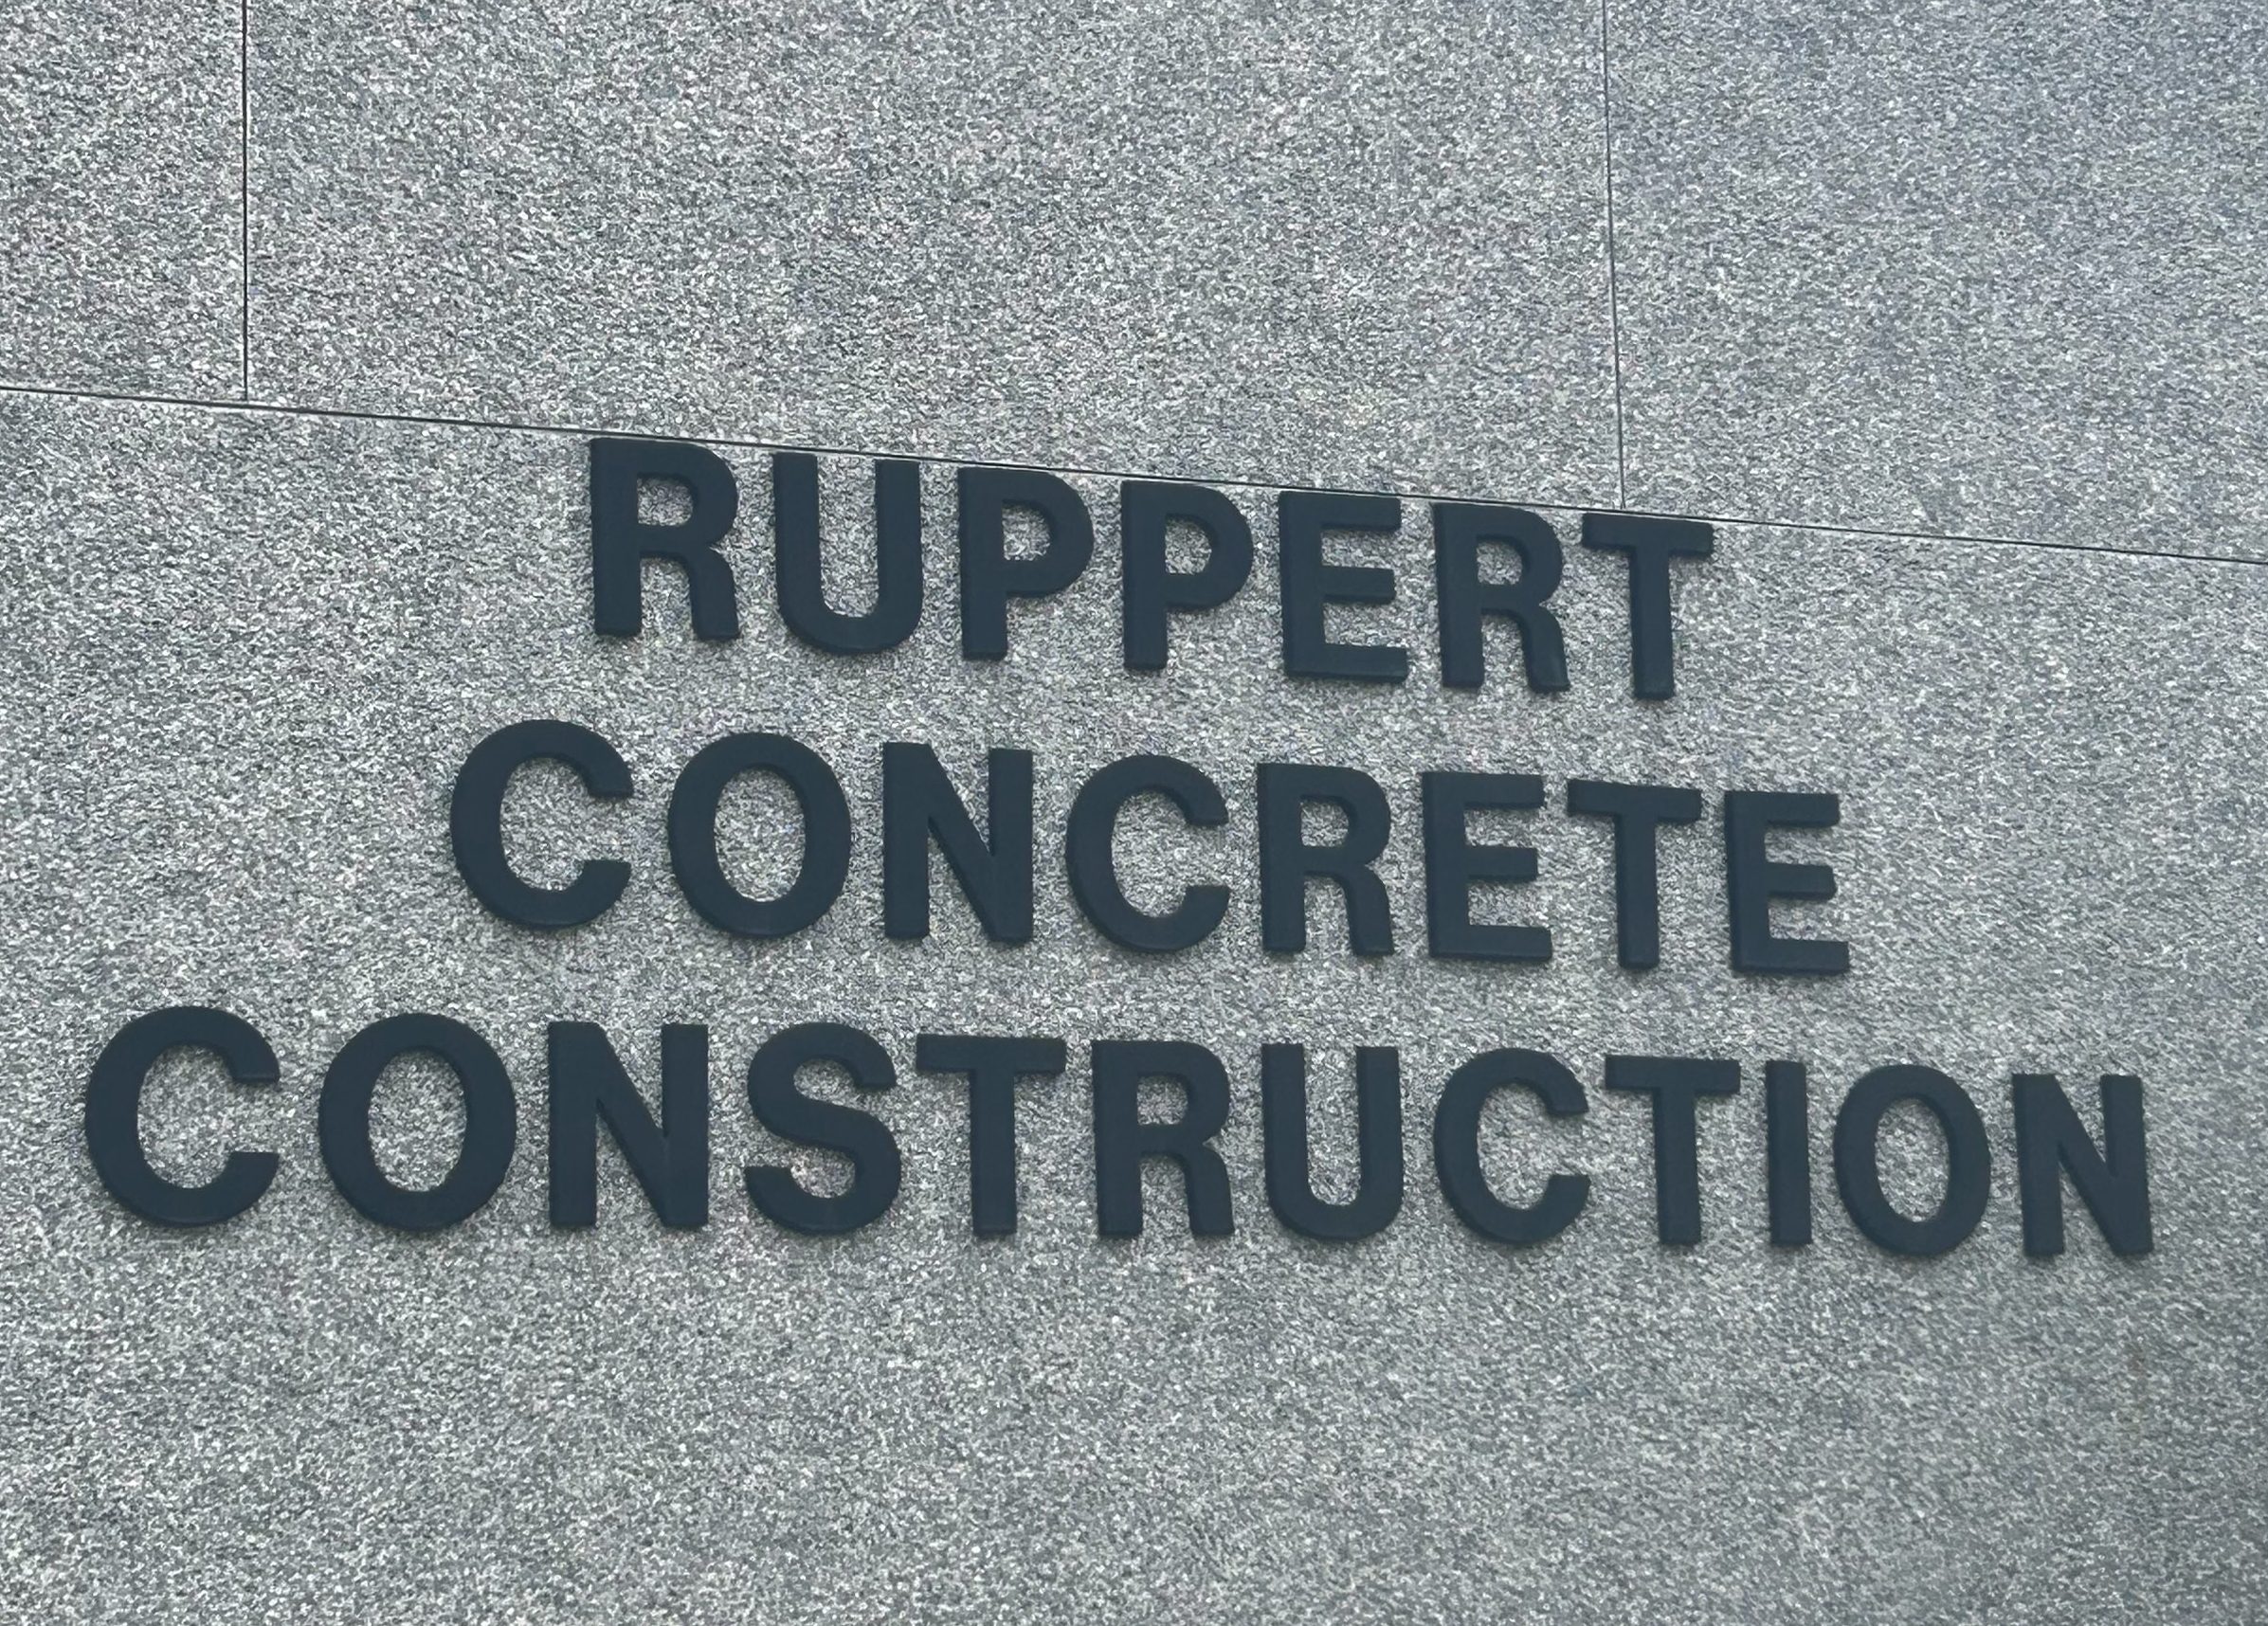 Ruppert Concrete Construction